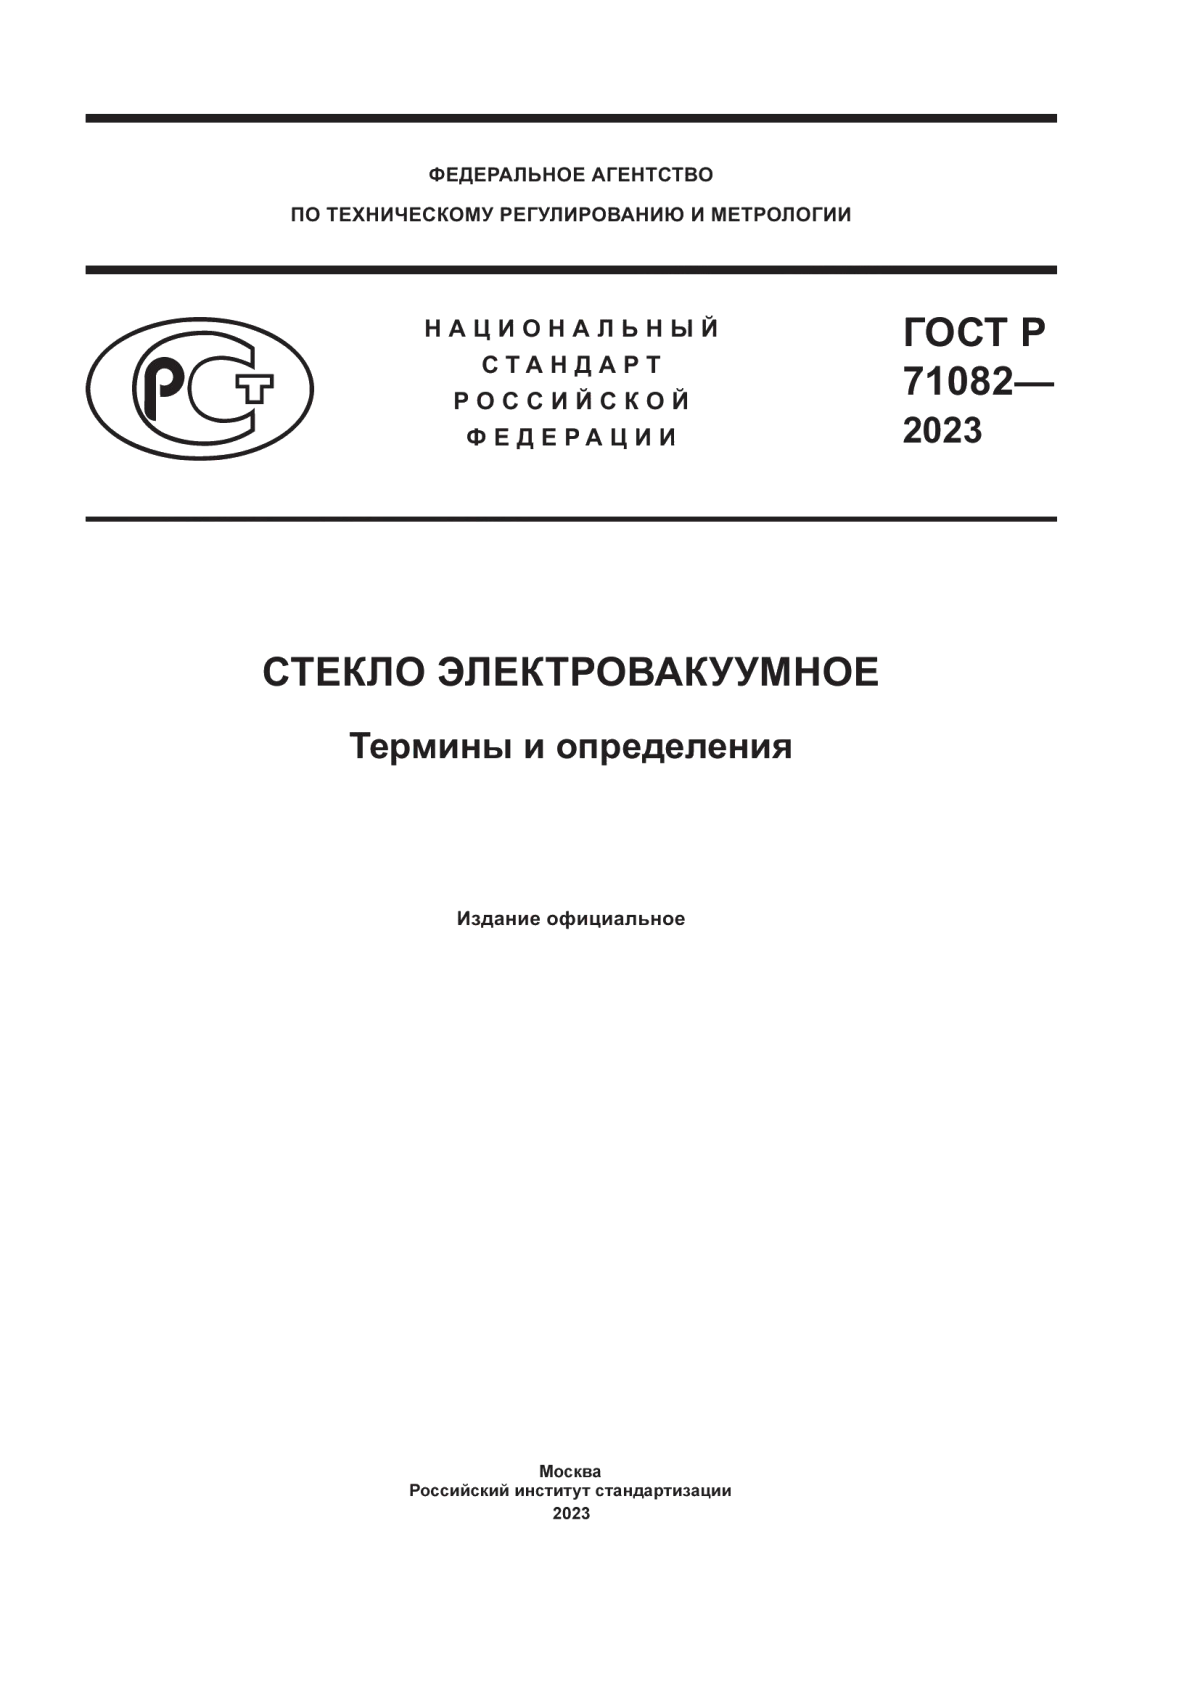 ГОСТ Р 71082-2023 Стекло электровакуумное. Термины и определения